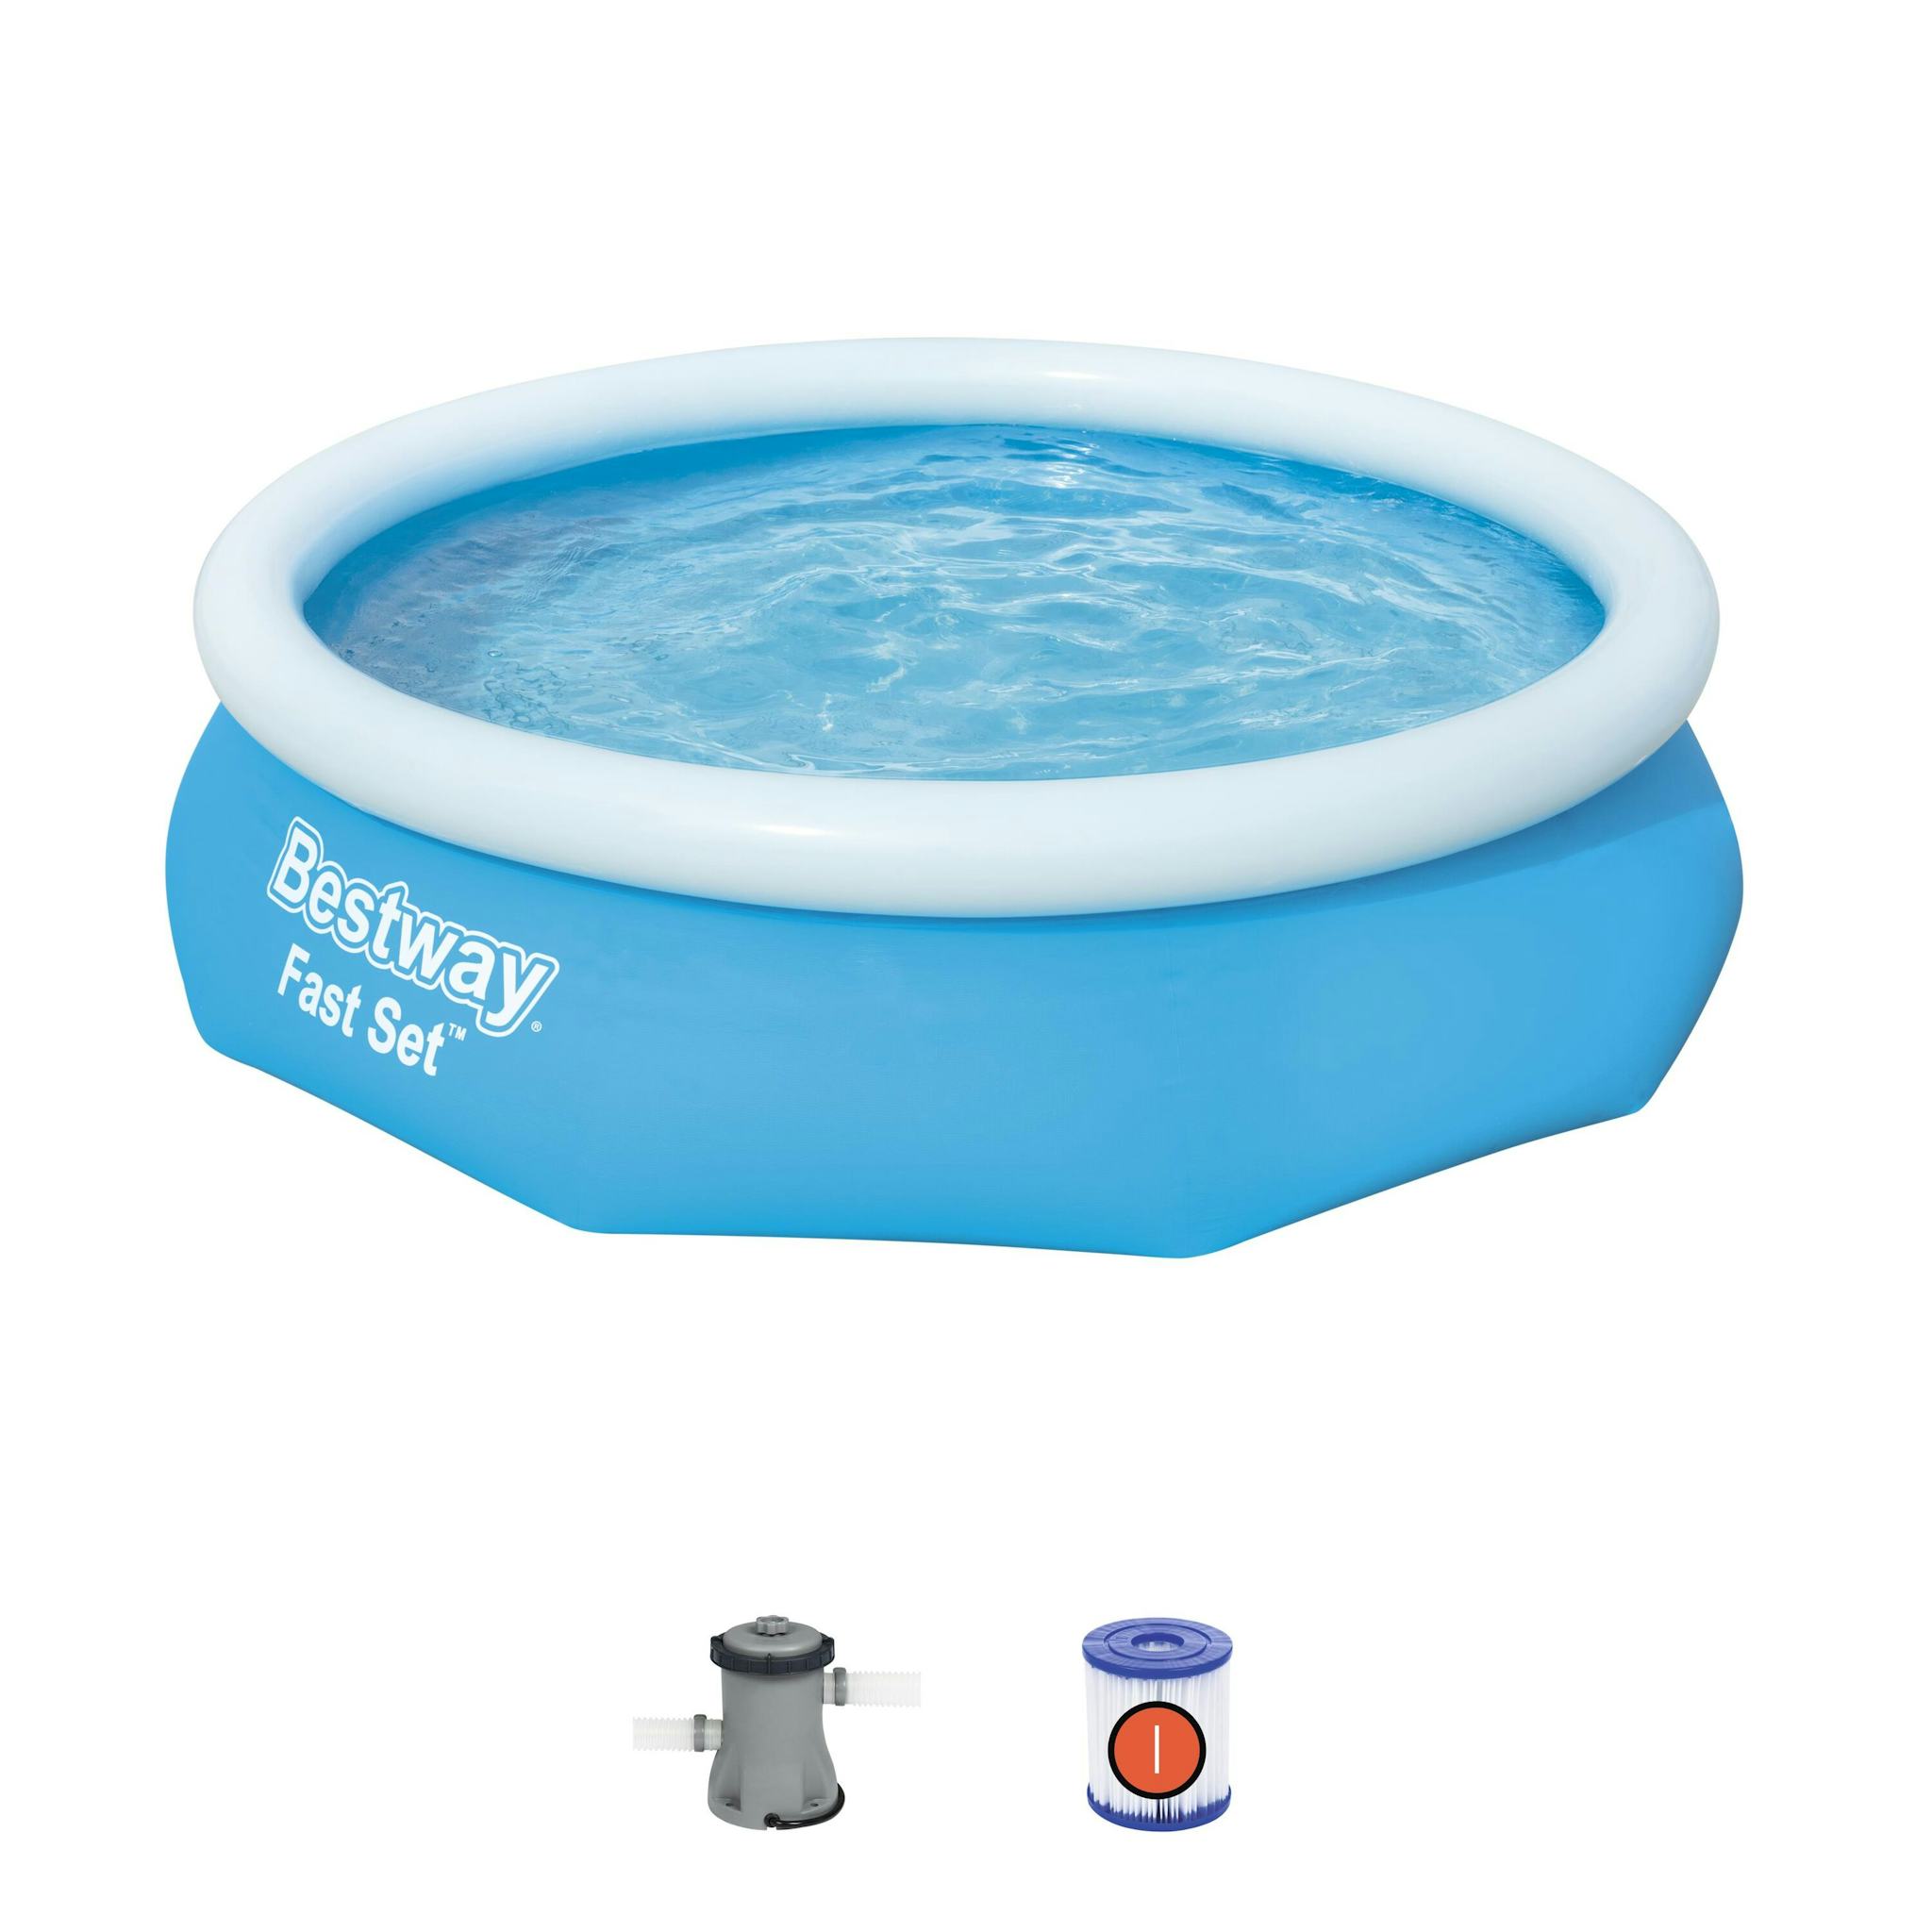 Bovengronds zwembad Fast Set bovengrondse ronde opblaasbare set van 305x76 cm blauw Bestway 2